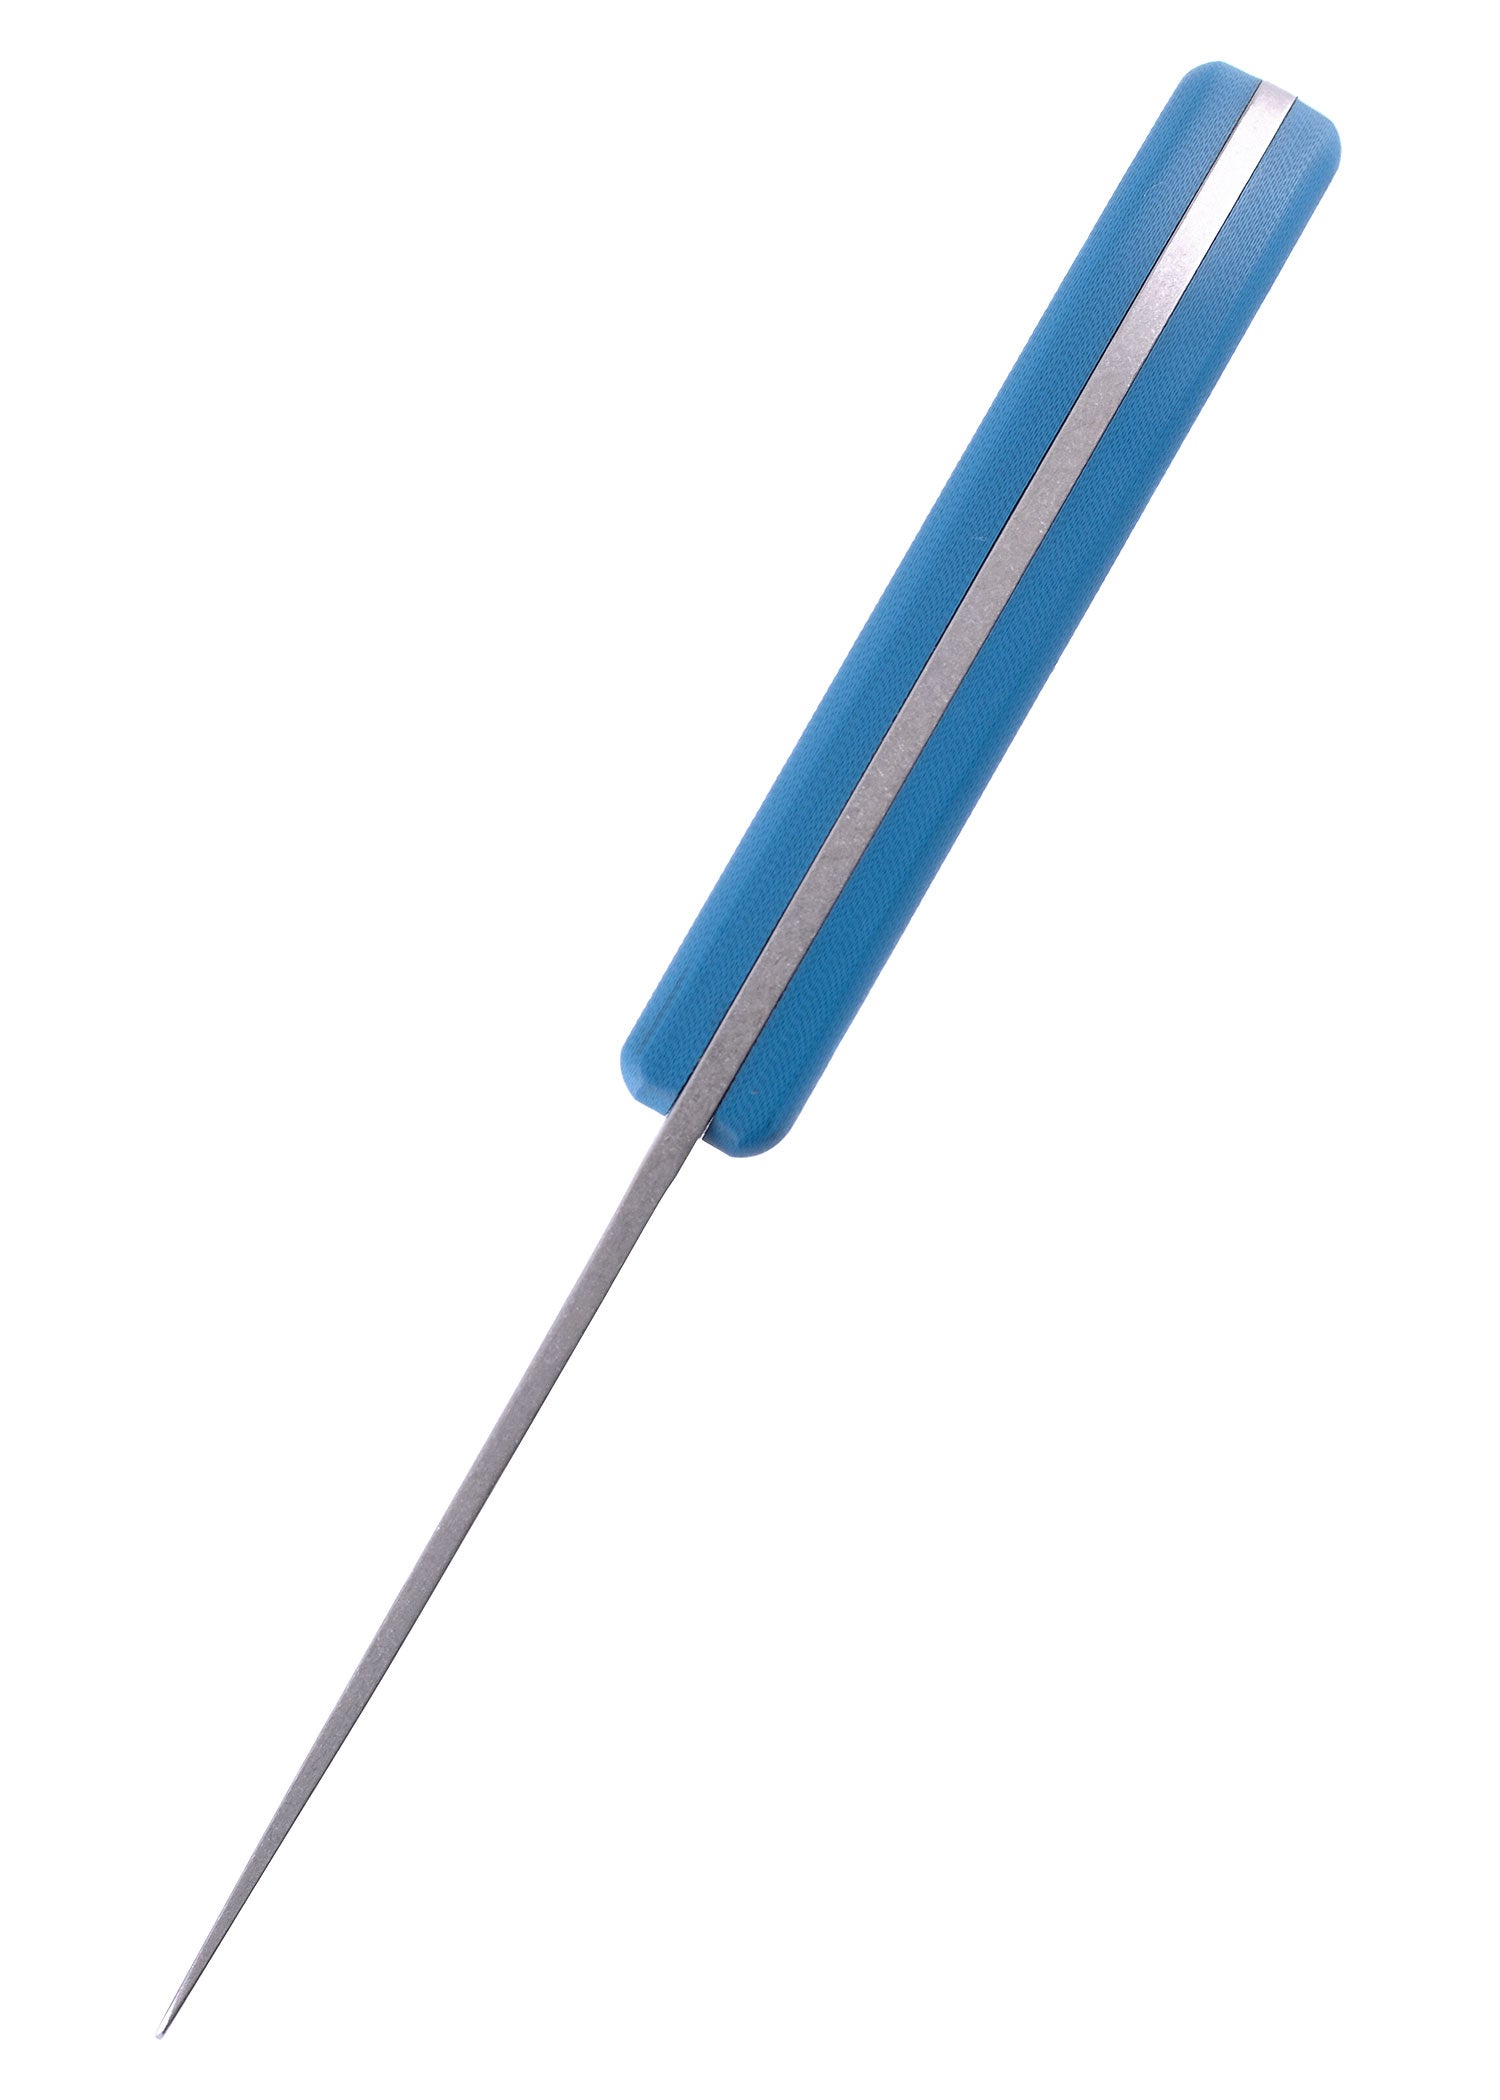 Das UNU Kinder Schnitzmesser der Firma Schnitzel mit blauem Griff von Oben